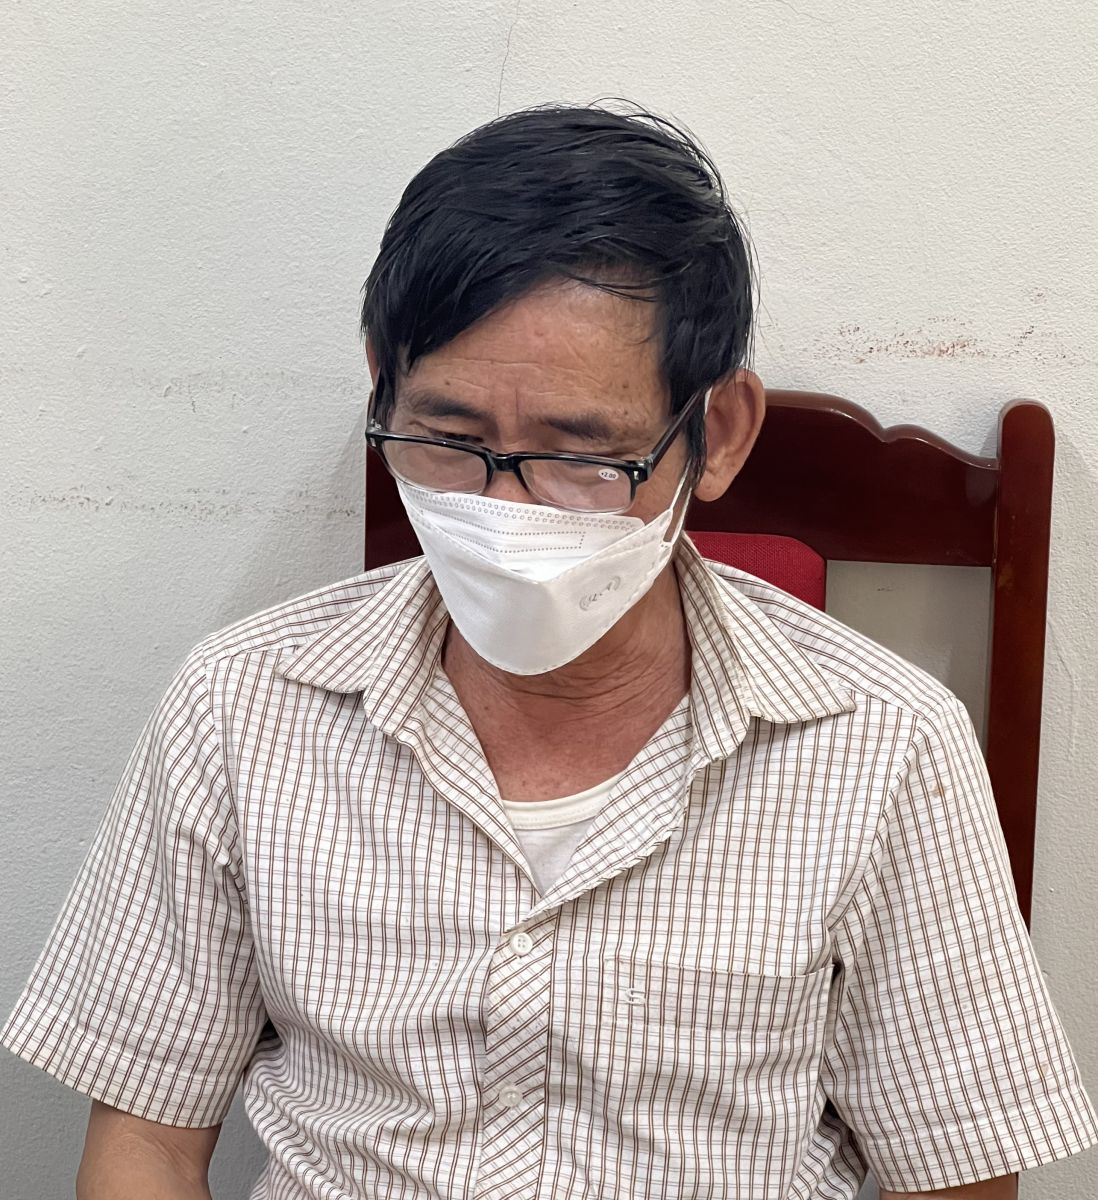 Ông Đàm Quang Thành đang khai báo tại  
Công an huyện Thường Xuân   